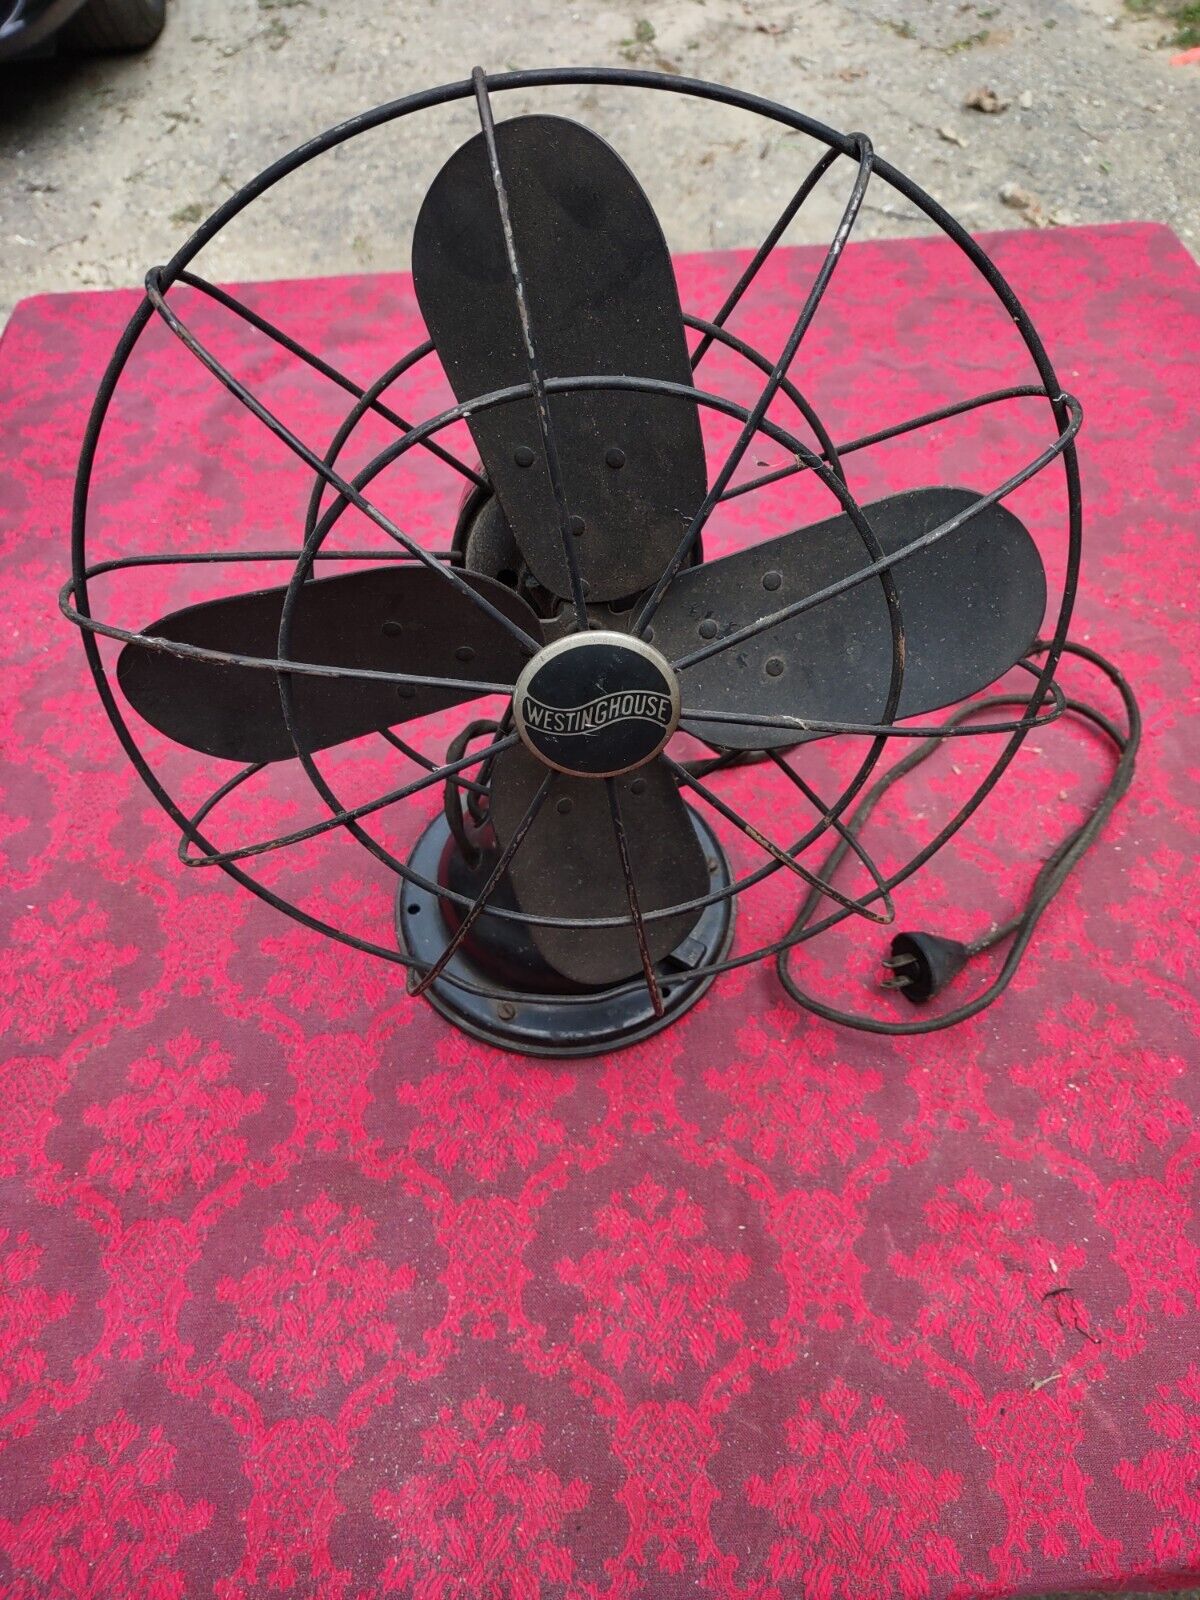 Vintage Westinghouse Oscillatiing Fan